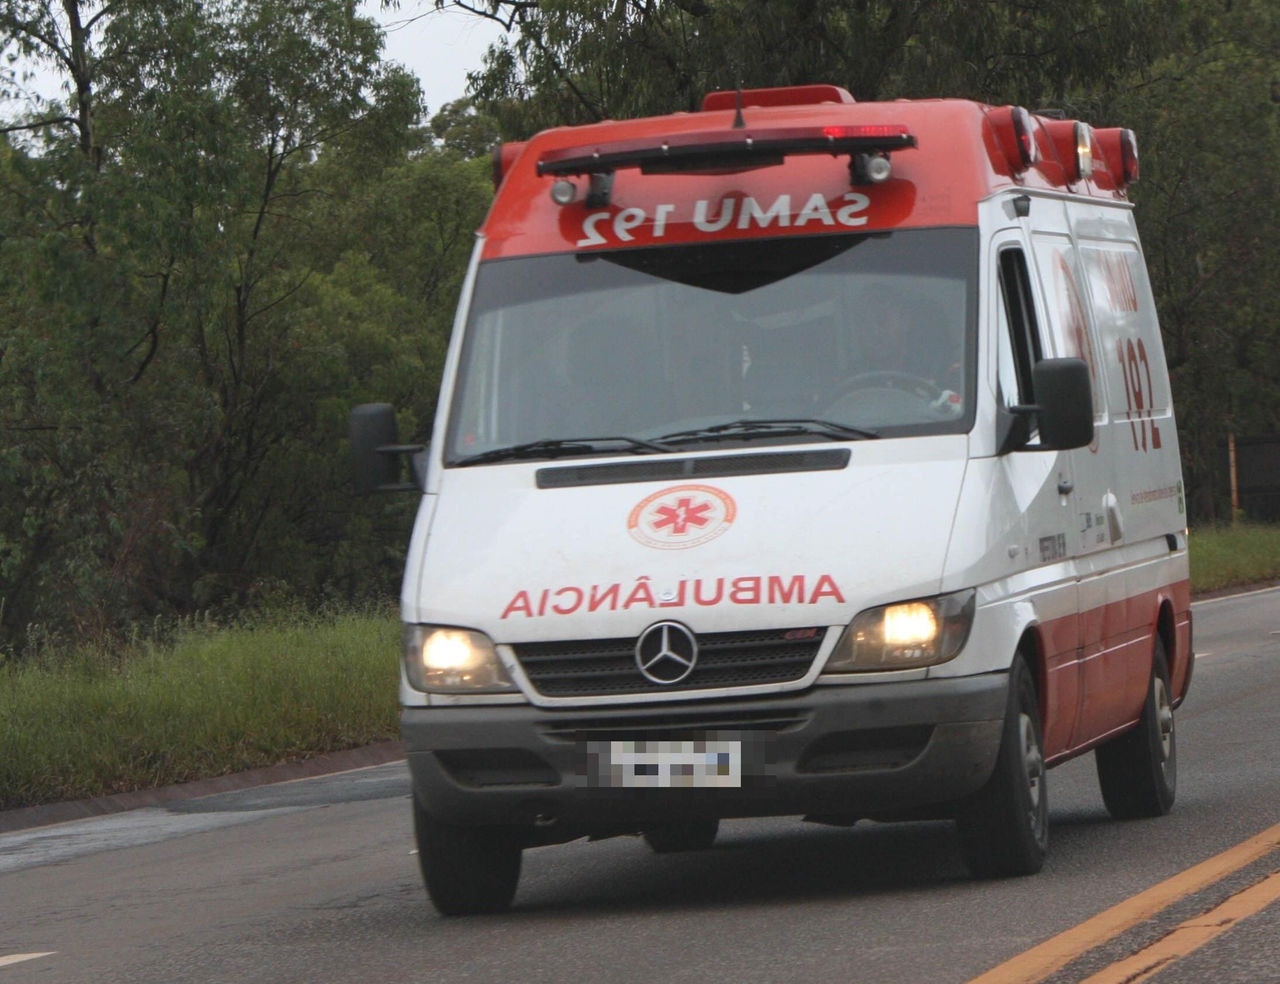 O Serviço de Atendimento Móvel de Urgência (SAMU) também foi acionado para o local do acidente